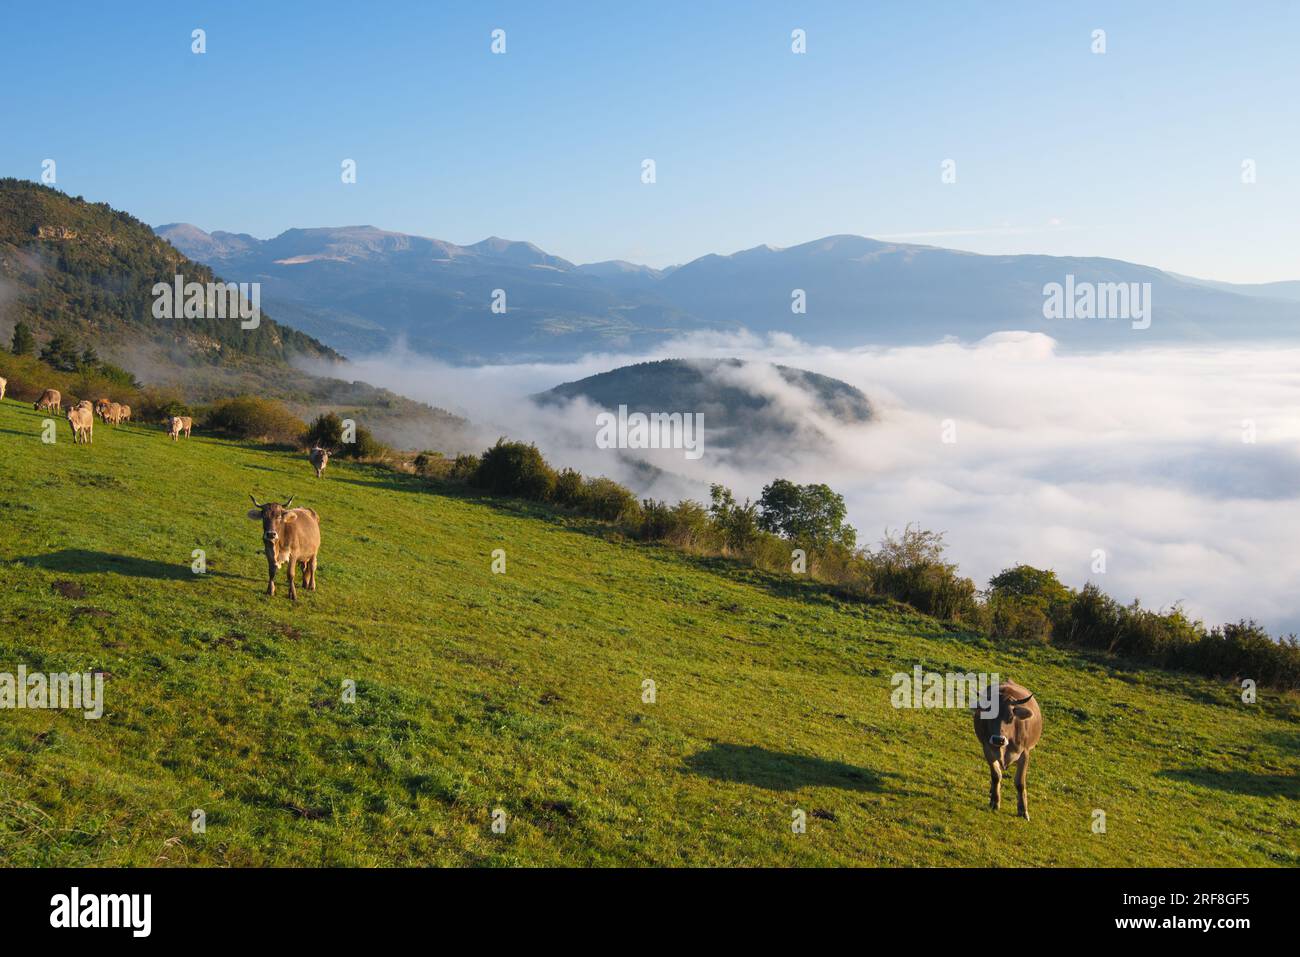 Un prato di montagna con mucche al pascolo e un mare di ​​clouds sottostante. Un prado de montaña con vacas pastando y por debajo se ve un mar de nubes. Foto Stock